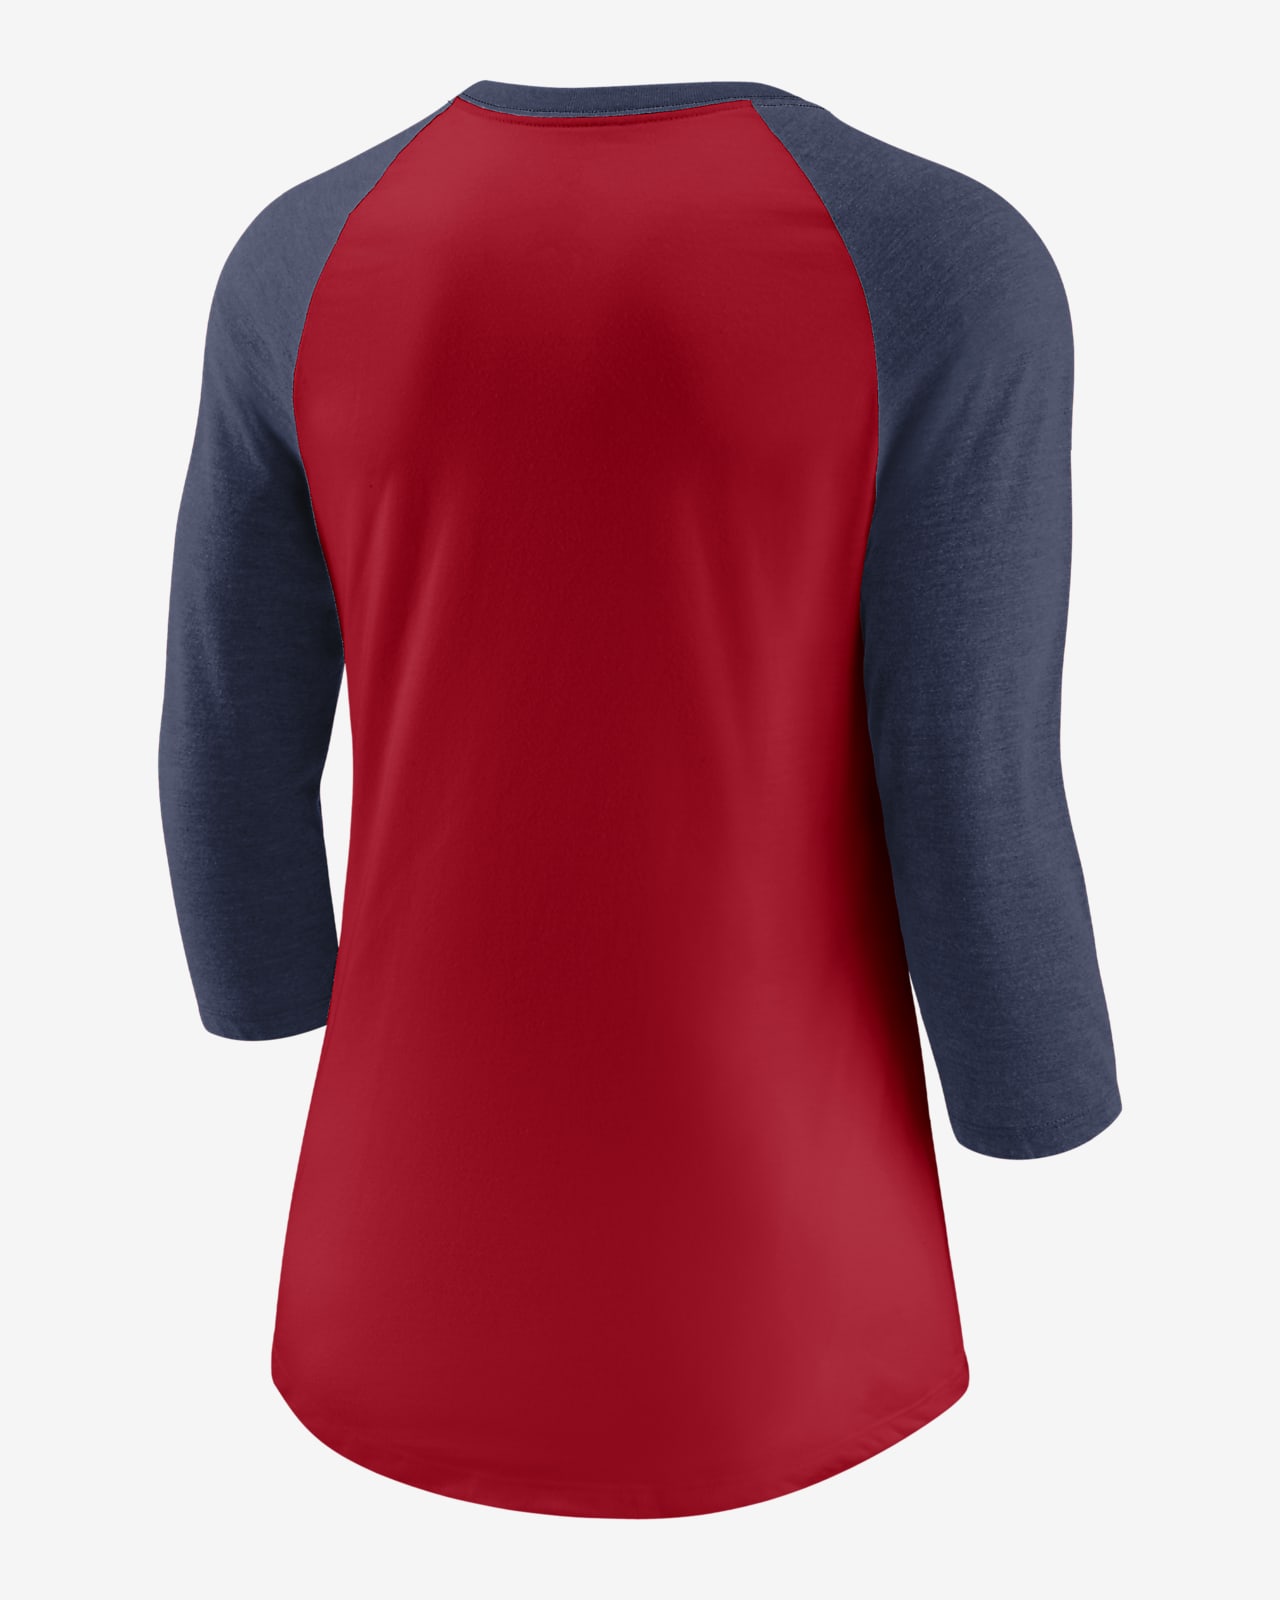 St. Louis Cardinals Nike Womens Baseball T-Shirt - Navy